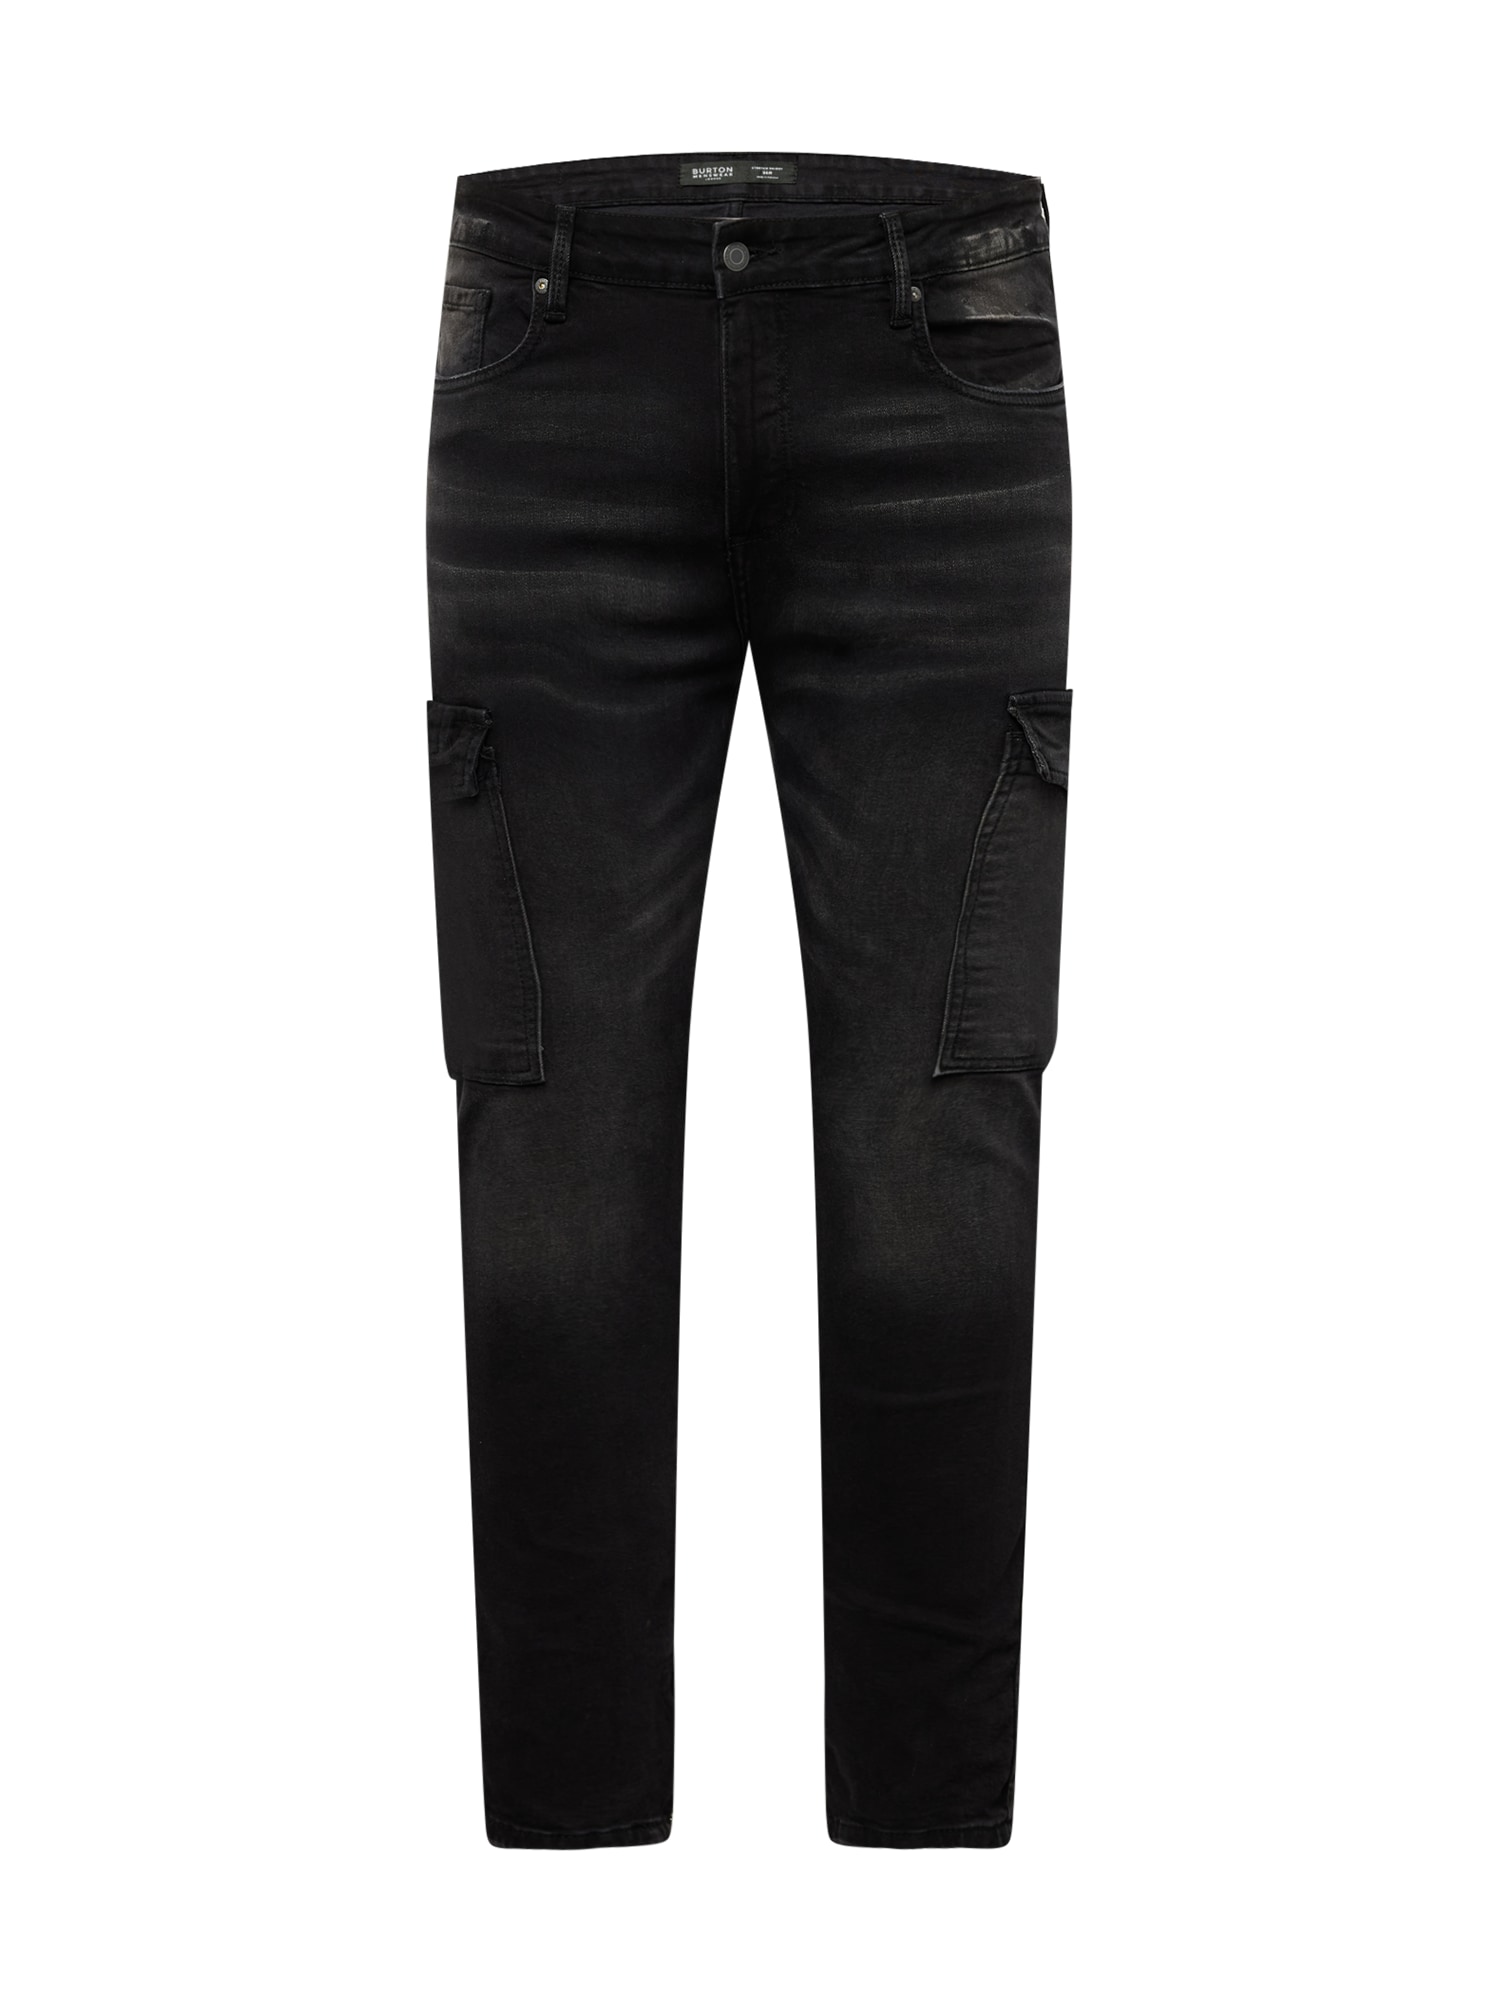 BURTON MENSWEAR LONDON Darbinio stiliaus džinsai juodo džinso spalva